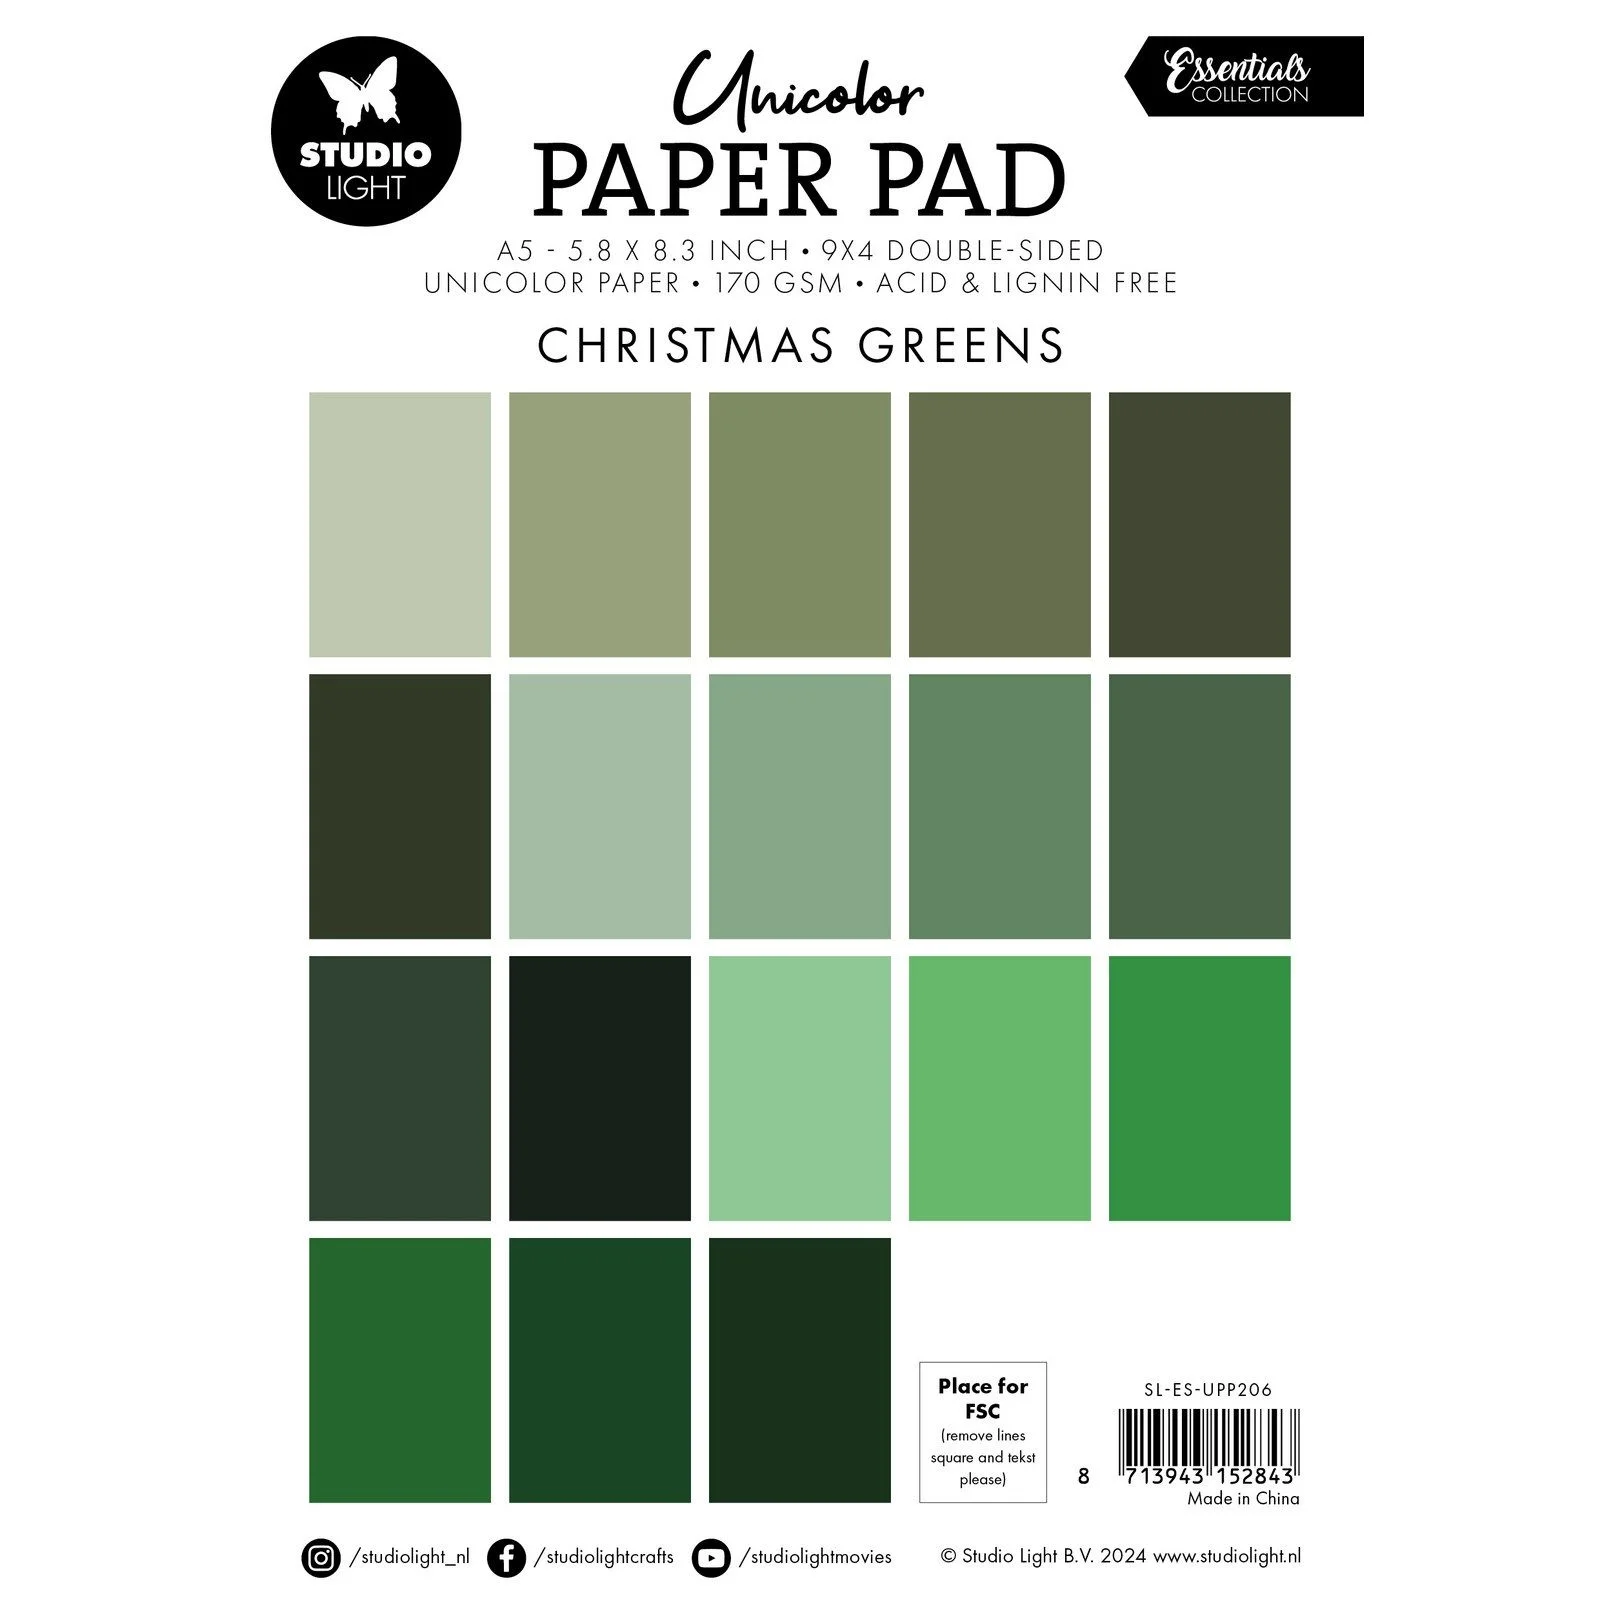 SL-ES-UPP206 Studio Light Paper Pad "Christmas Greens" karton papir blok nuancer af mørkegrønne lysegrønne Julefarver karton papir Unicolor